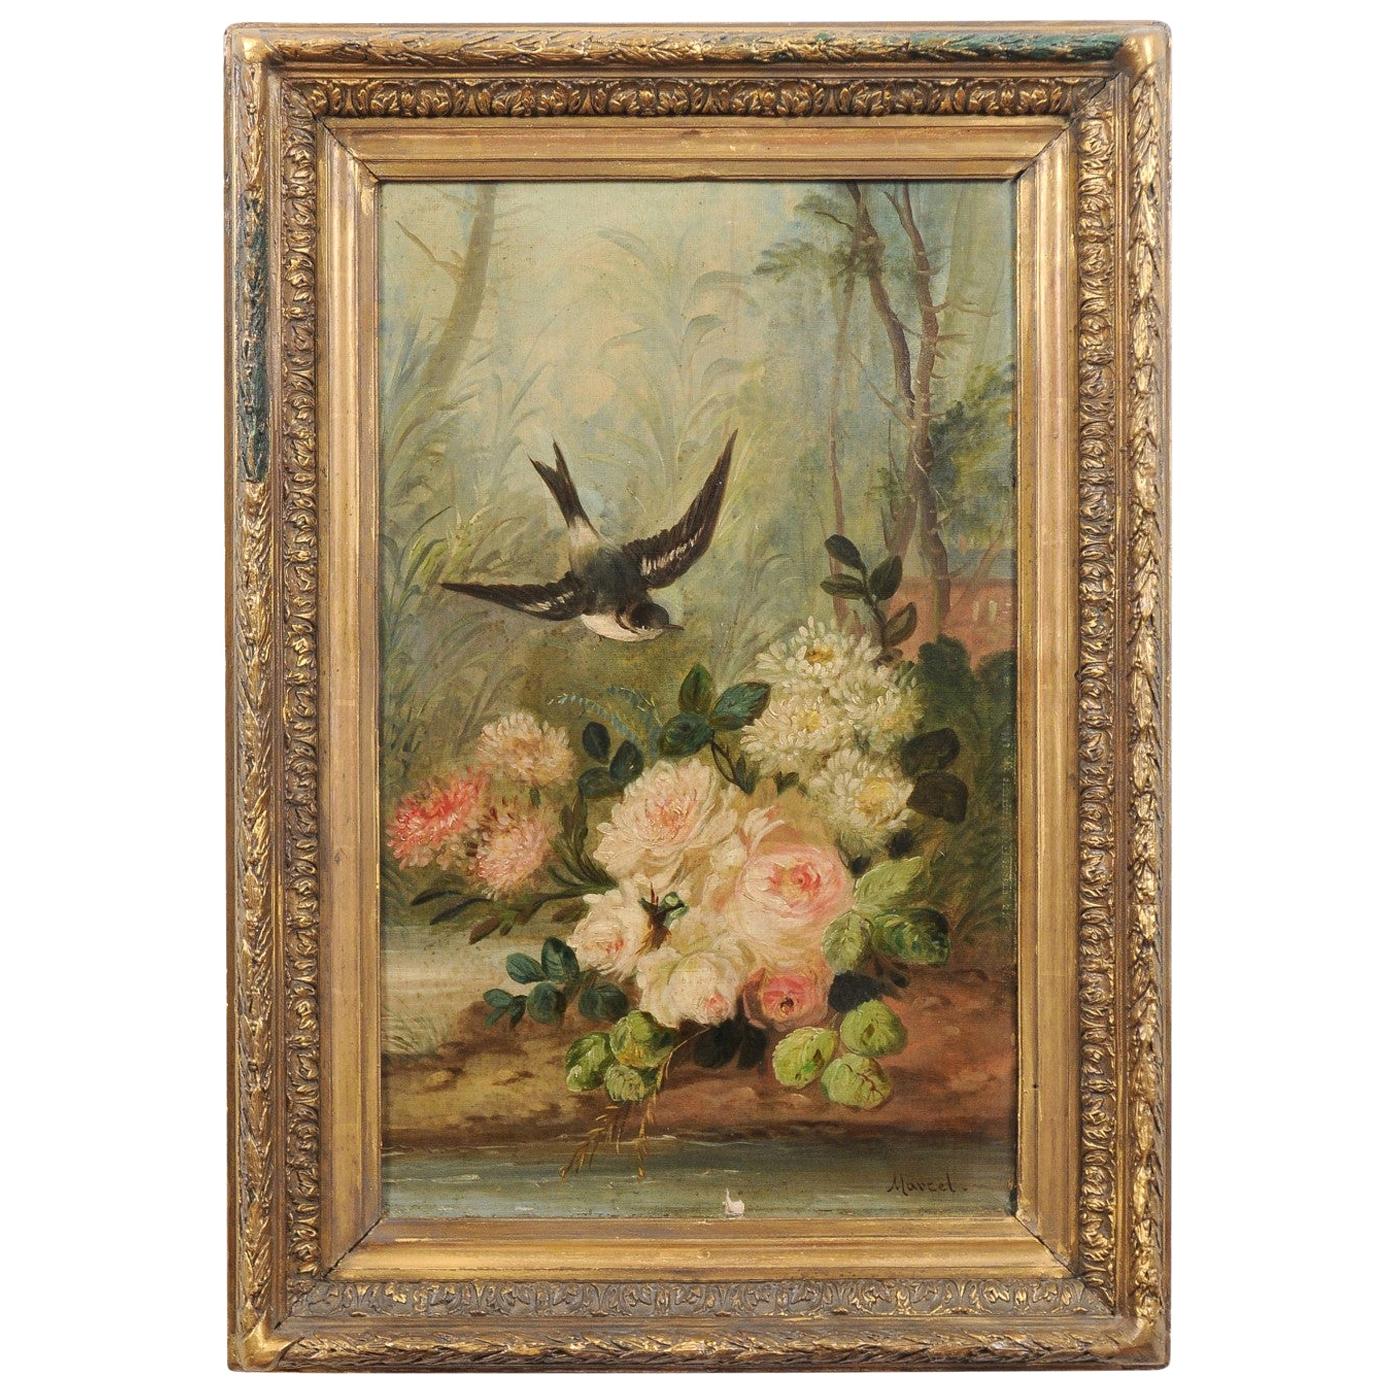 Huile sur toile des années 1850 de Napoléon III, peinture encadrée avec oiseau et roses